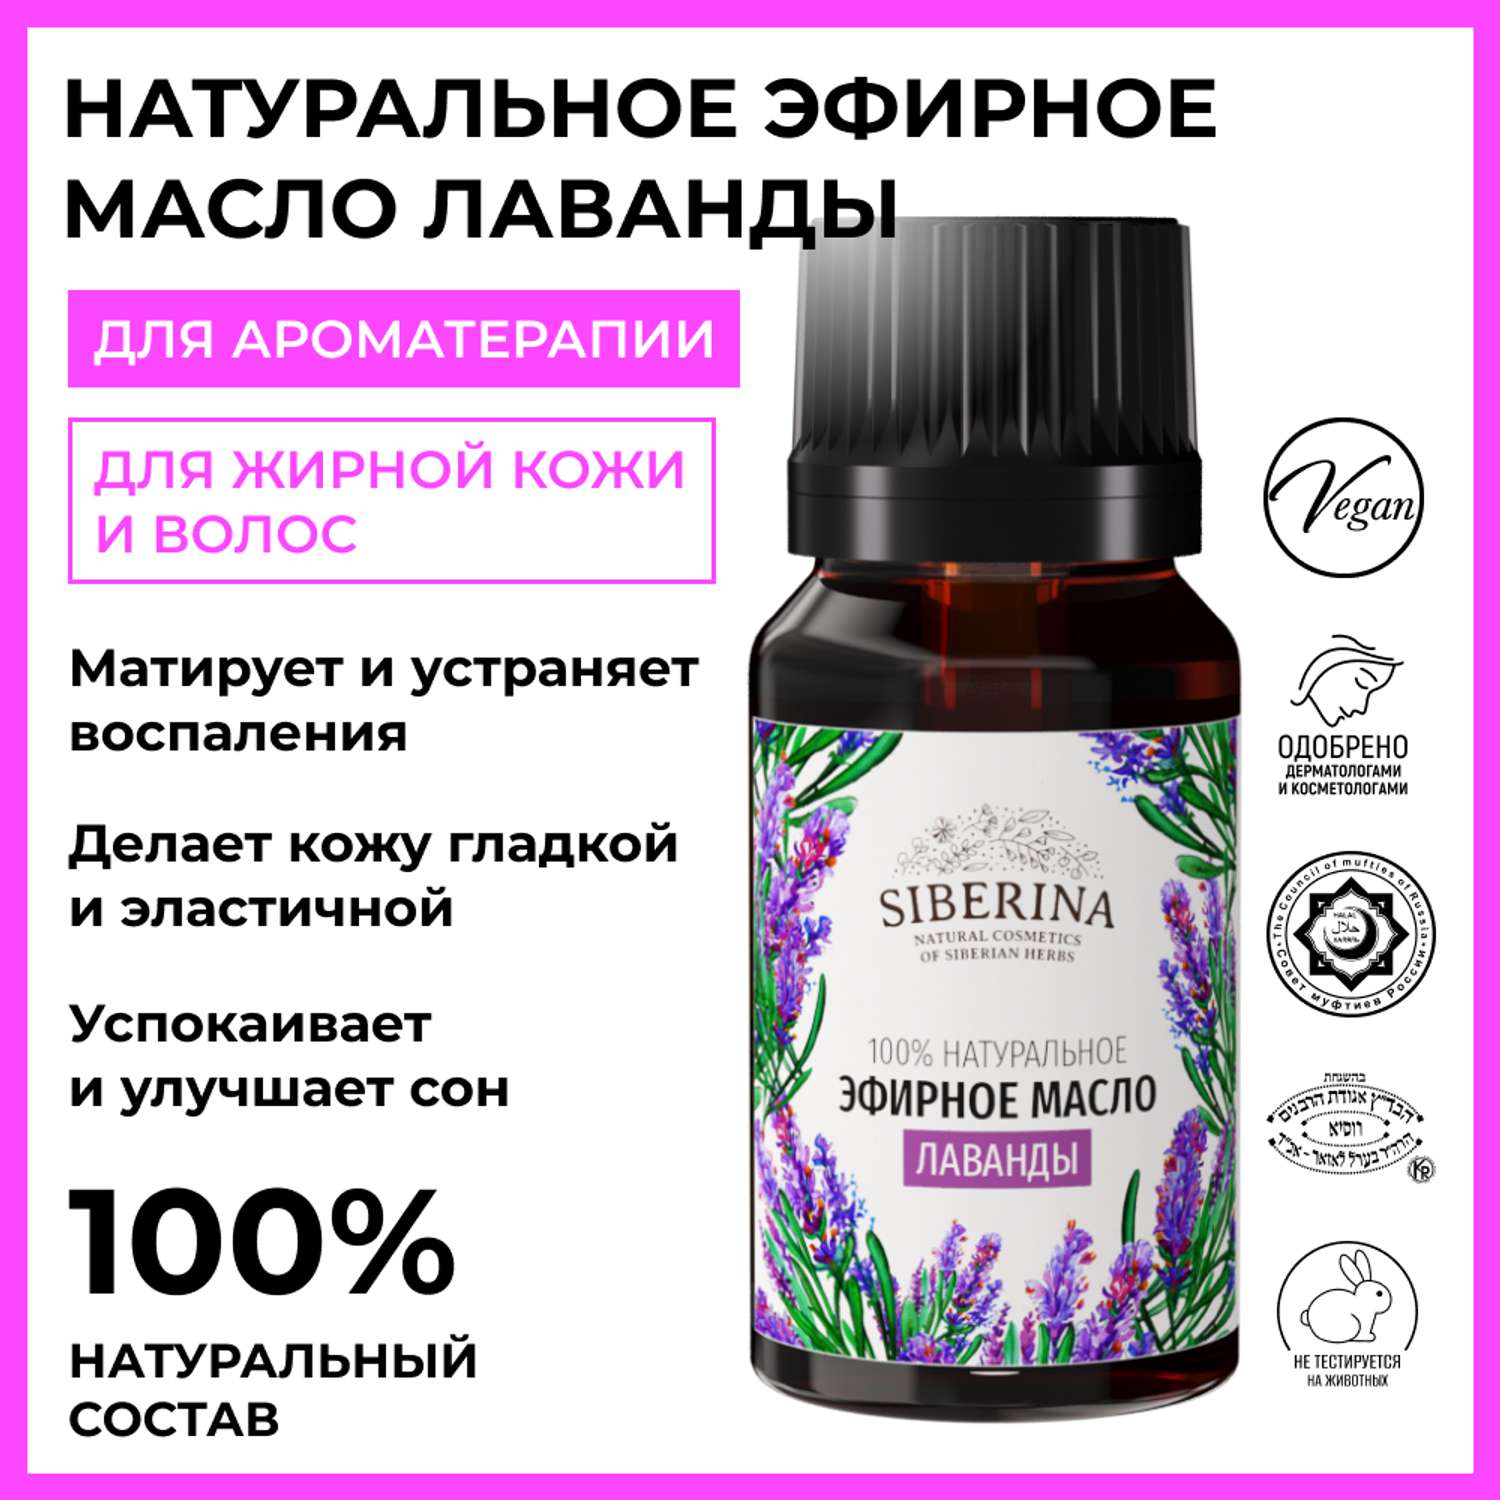 Эфирное масло Siberina натуральное «Лаванды» для тела и ароматерапии 8 мл - фото 2